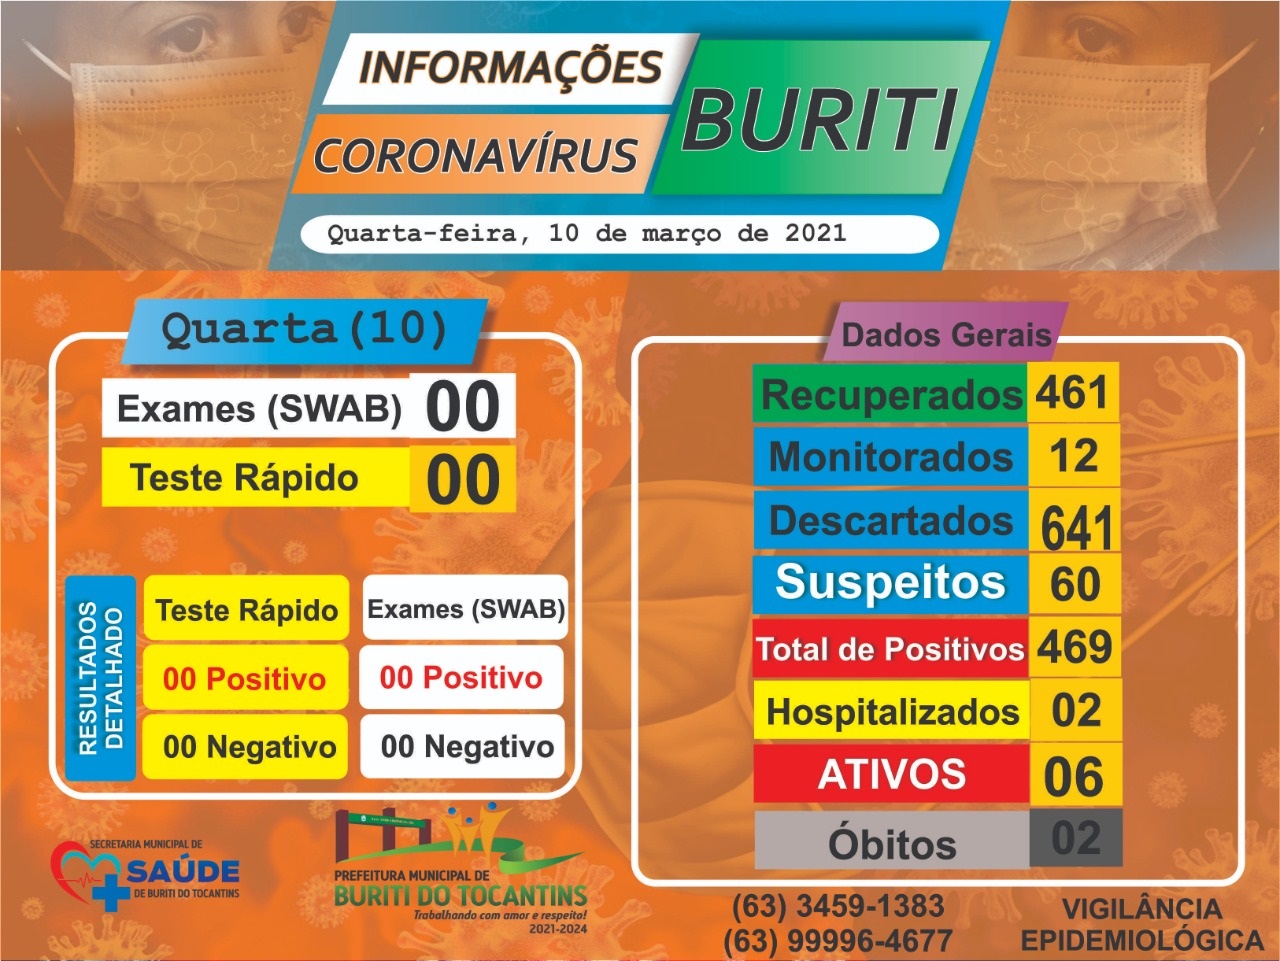 SAÚDE: Boletim e Informações COVID-19 da cidade de Buriti do Tocantins do dia 10 de março de 2021.